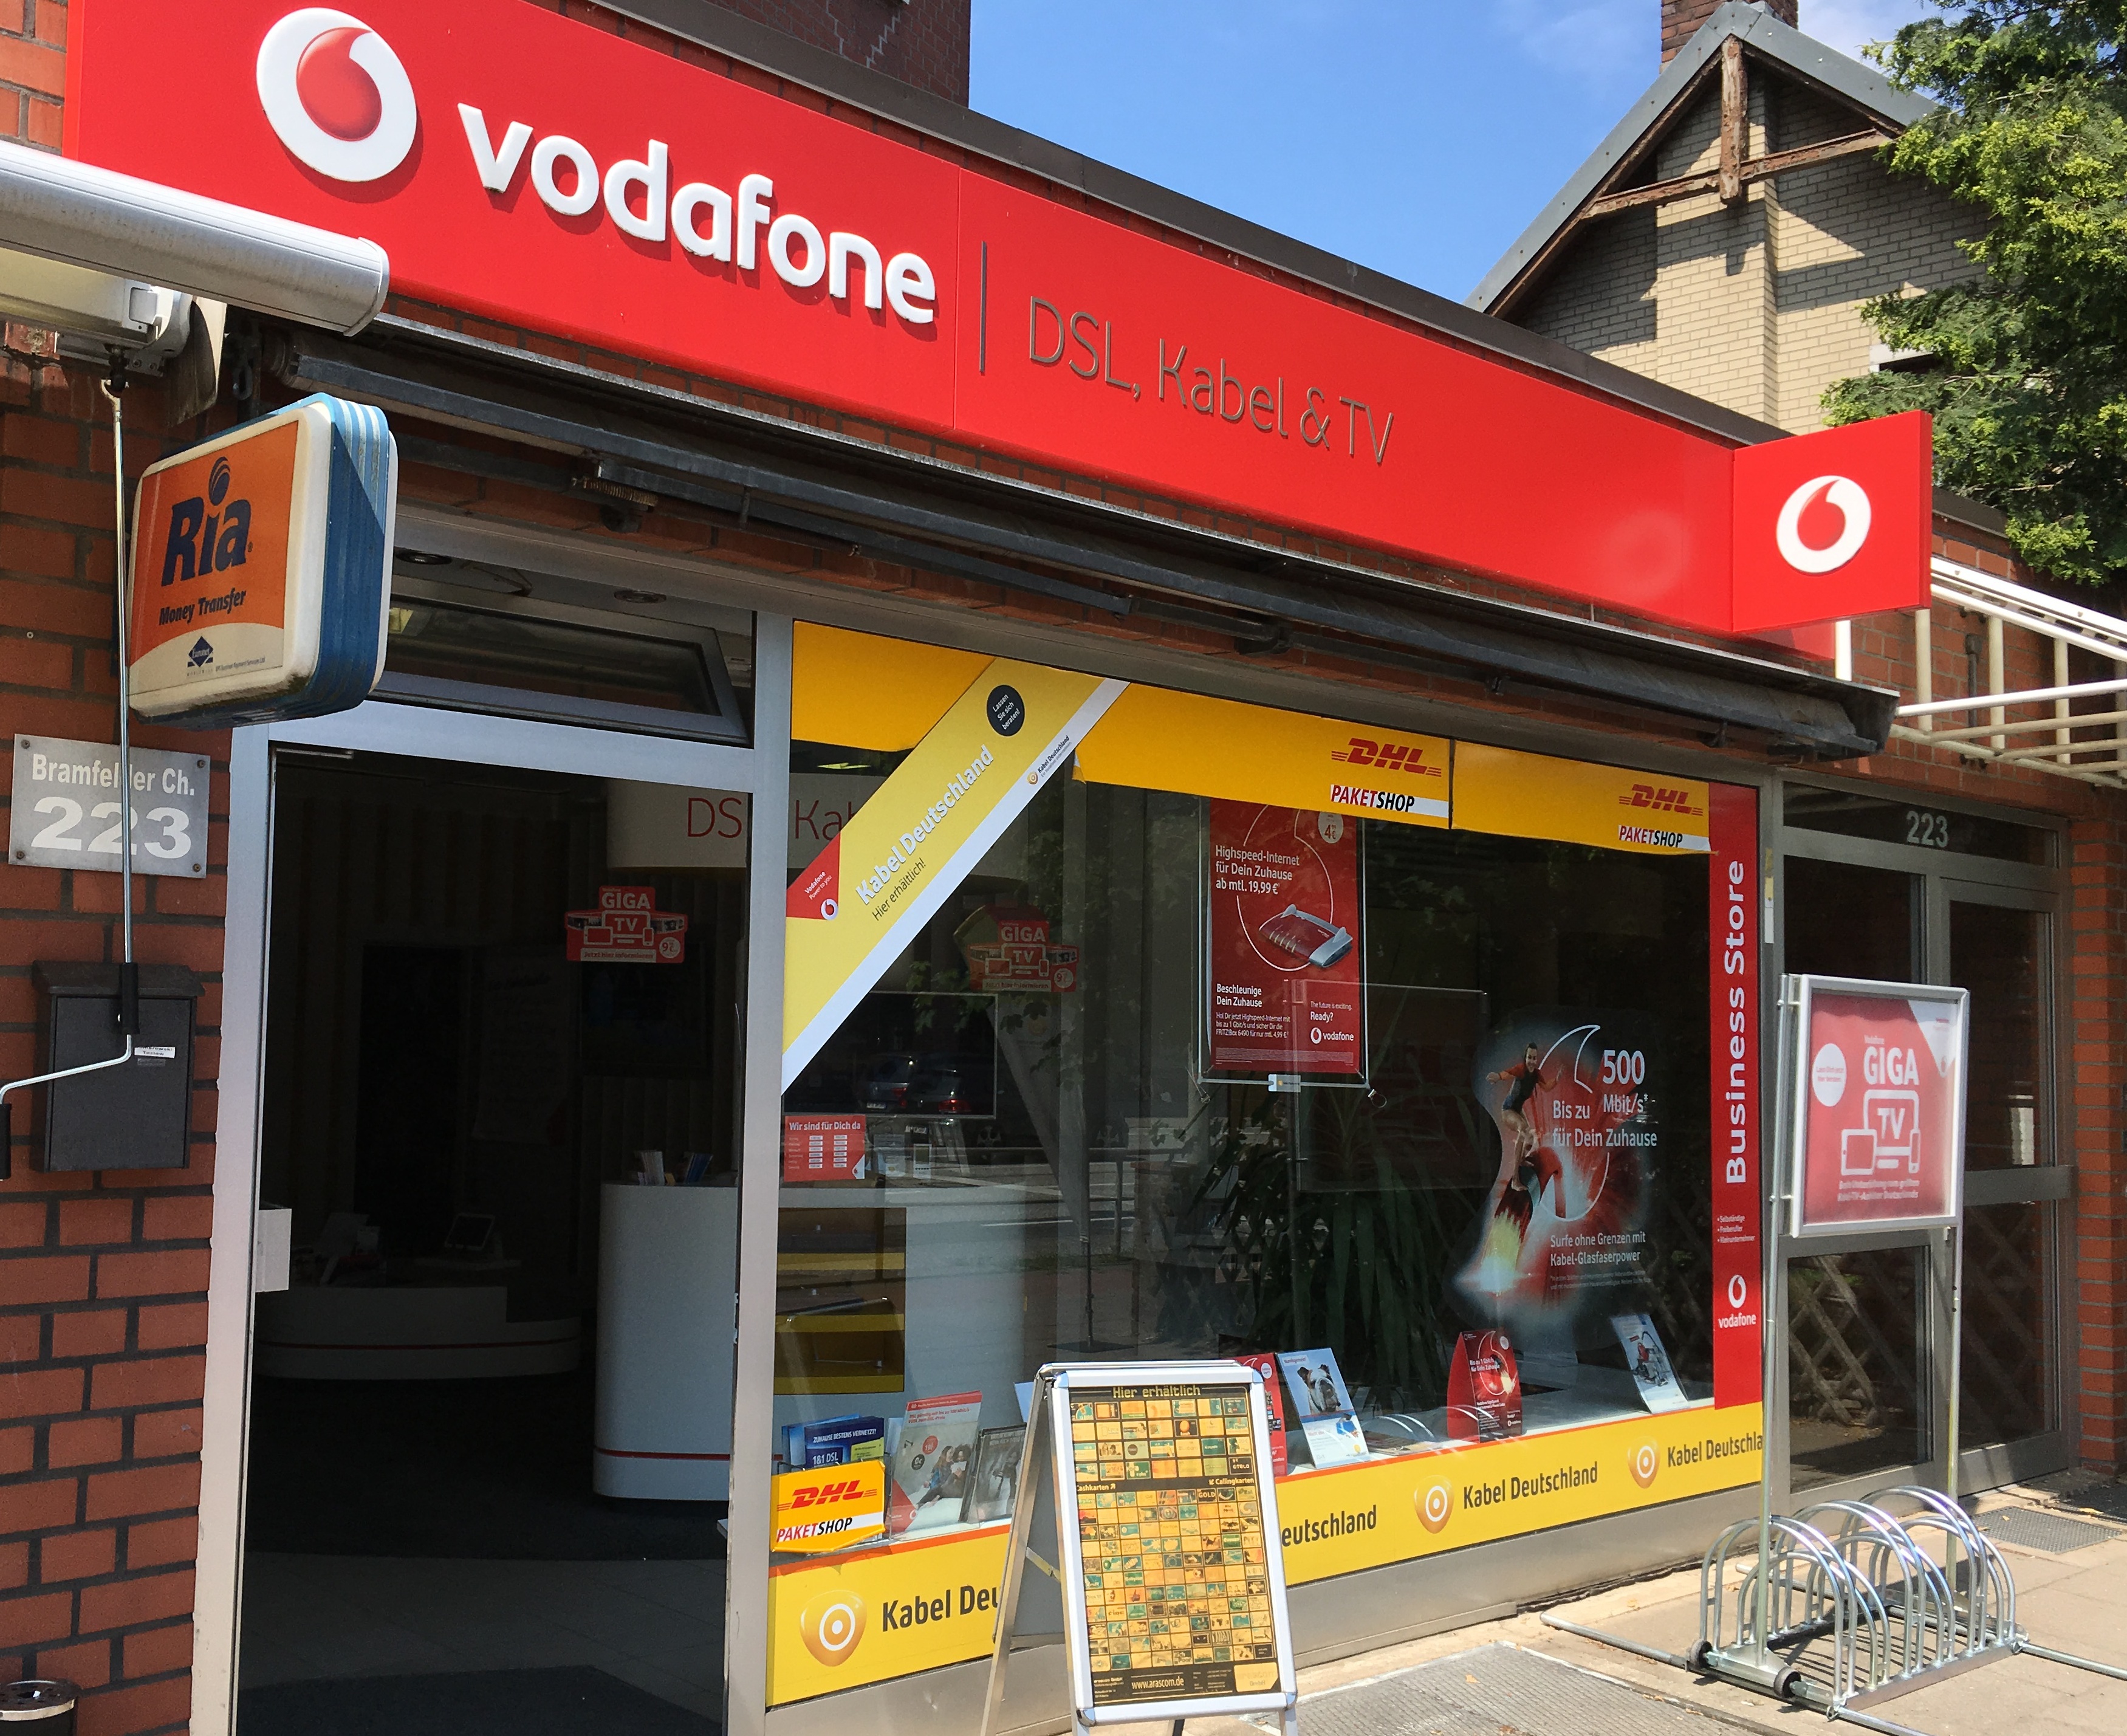 Vodafone Kabel Partnershop 22177 Hamburg-Bramfeld Öffnungszeiten | Adresse  | Telefon